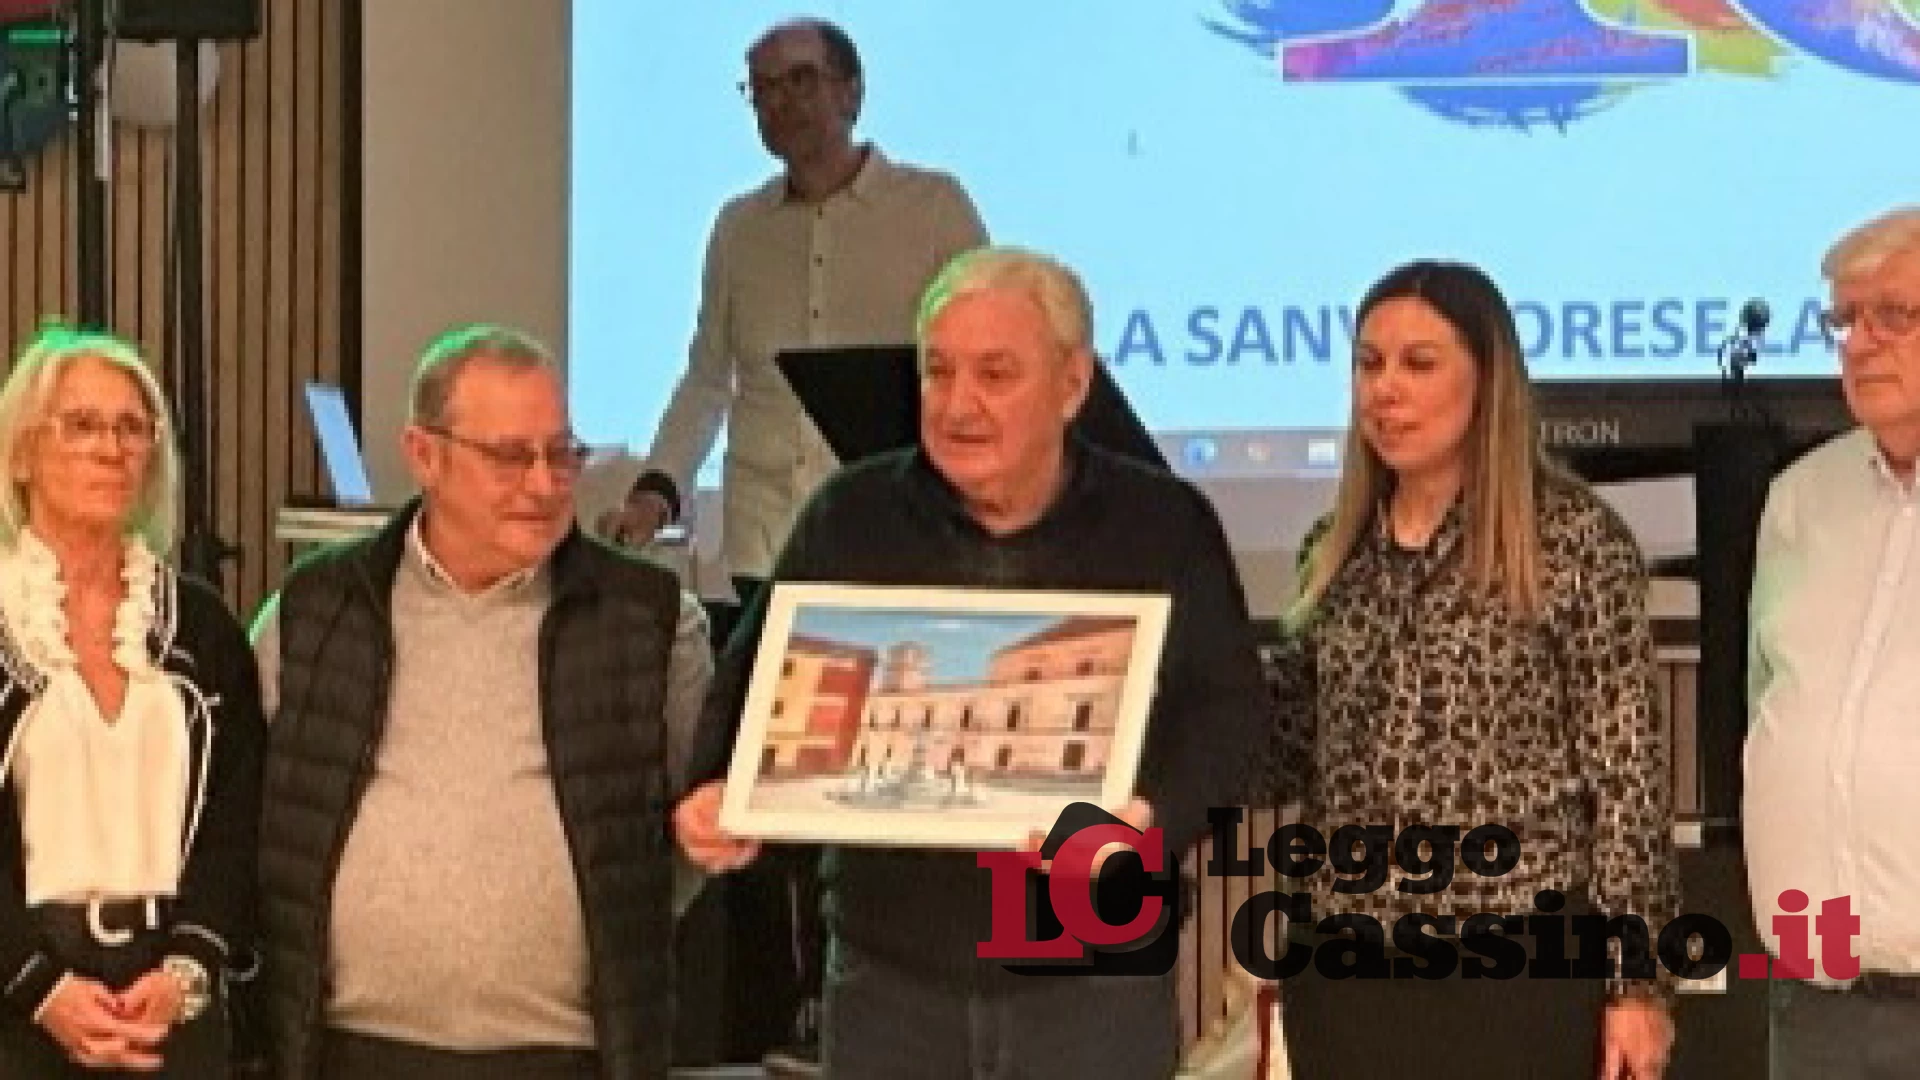 Il sindaco Bucci a Lione incontra 'La Sanvittorese'